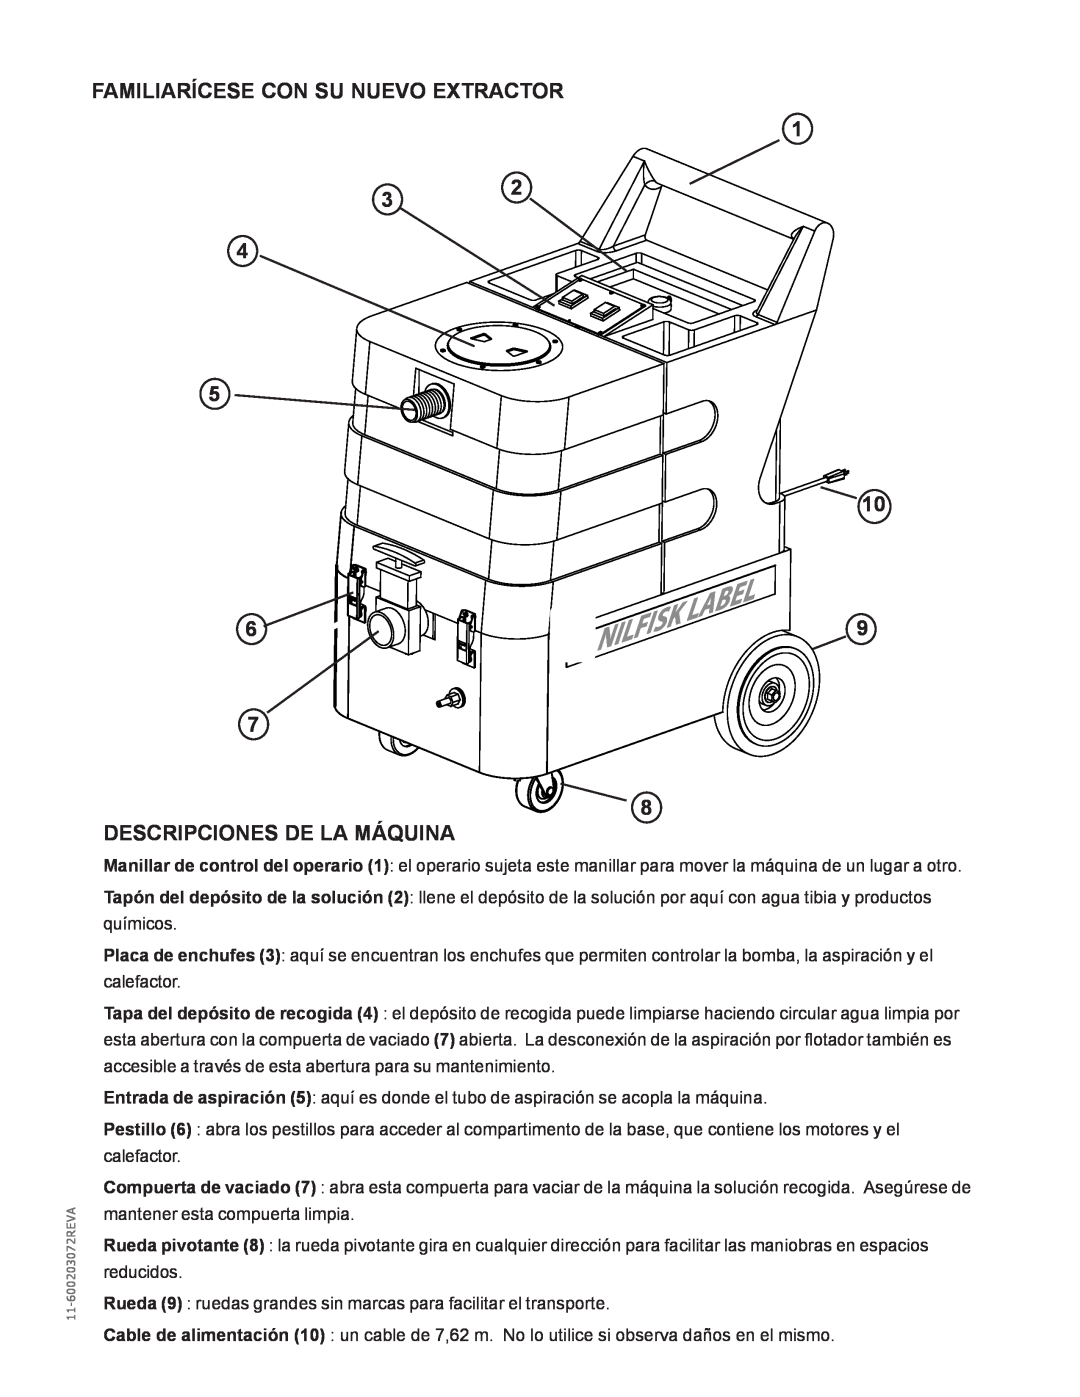 Nilfisk-Advance America MX 307 H instruction manual Familiarícese Con Su Nuevo Extractor, Descripciones De La Máquina 